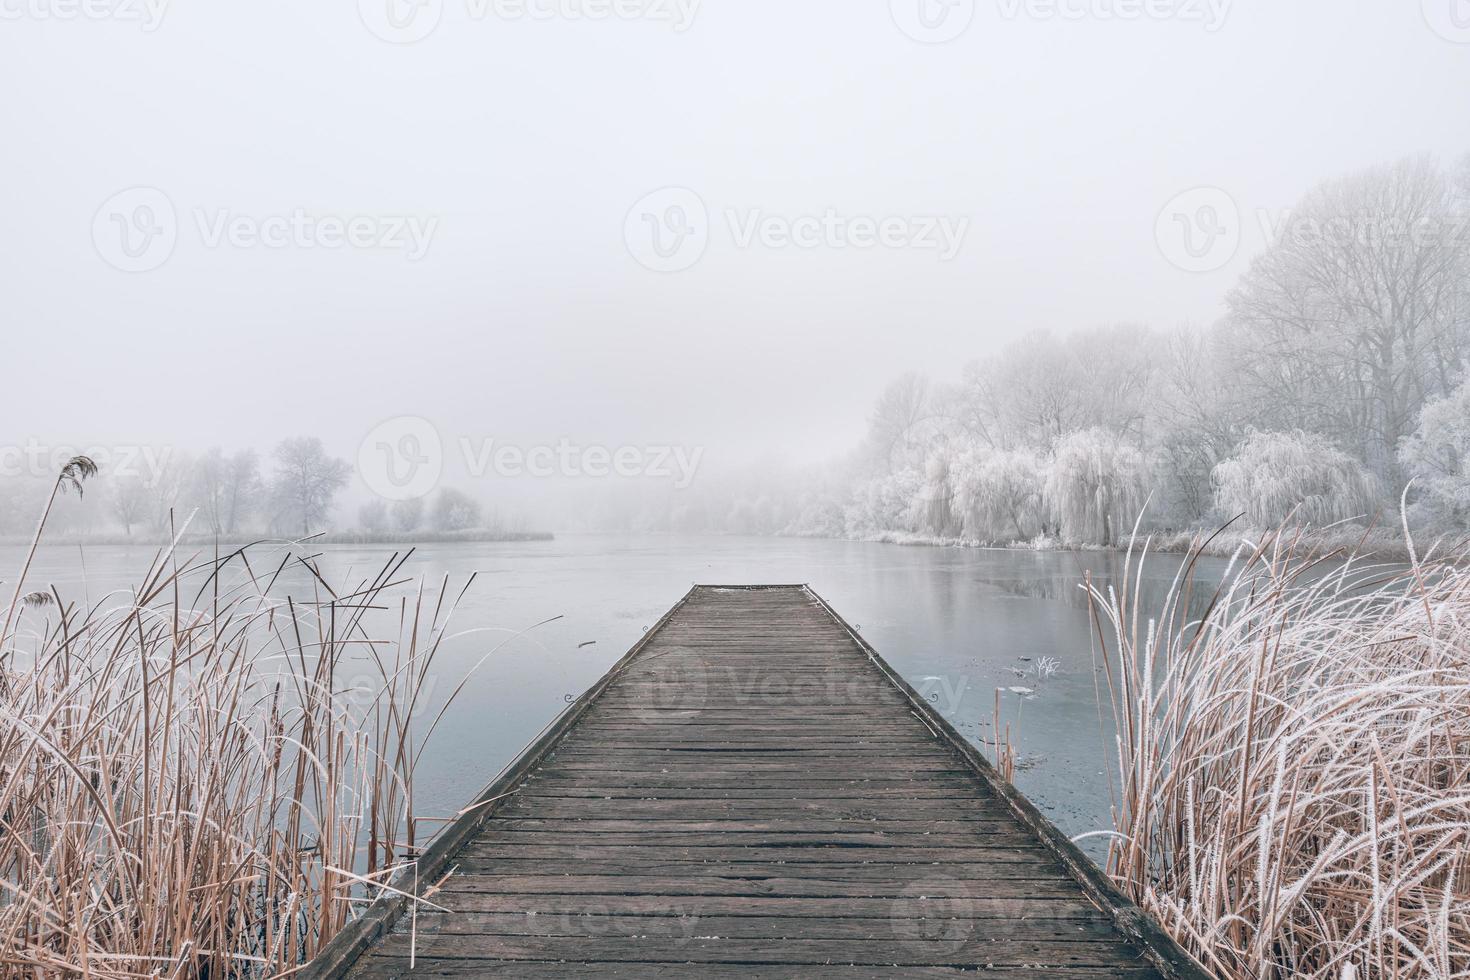 paesaggio invernale serale. molo in legno su un bellissimo lago ghiacciato. alberi con gelo, calmo scenario invernale stagionale. vista pacifica e bianca foto